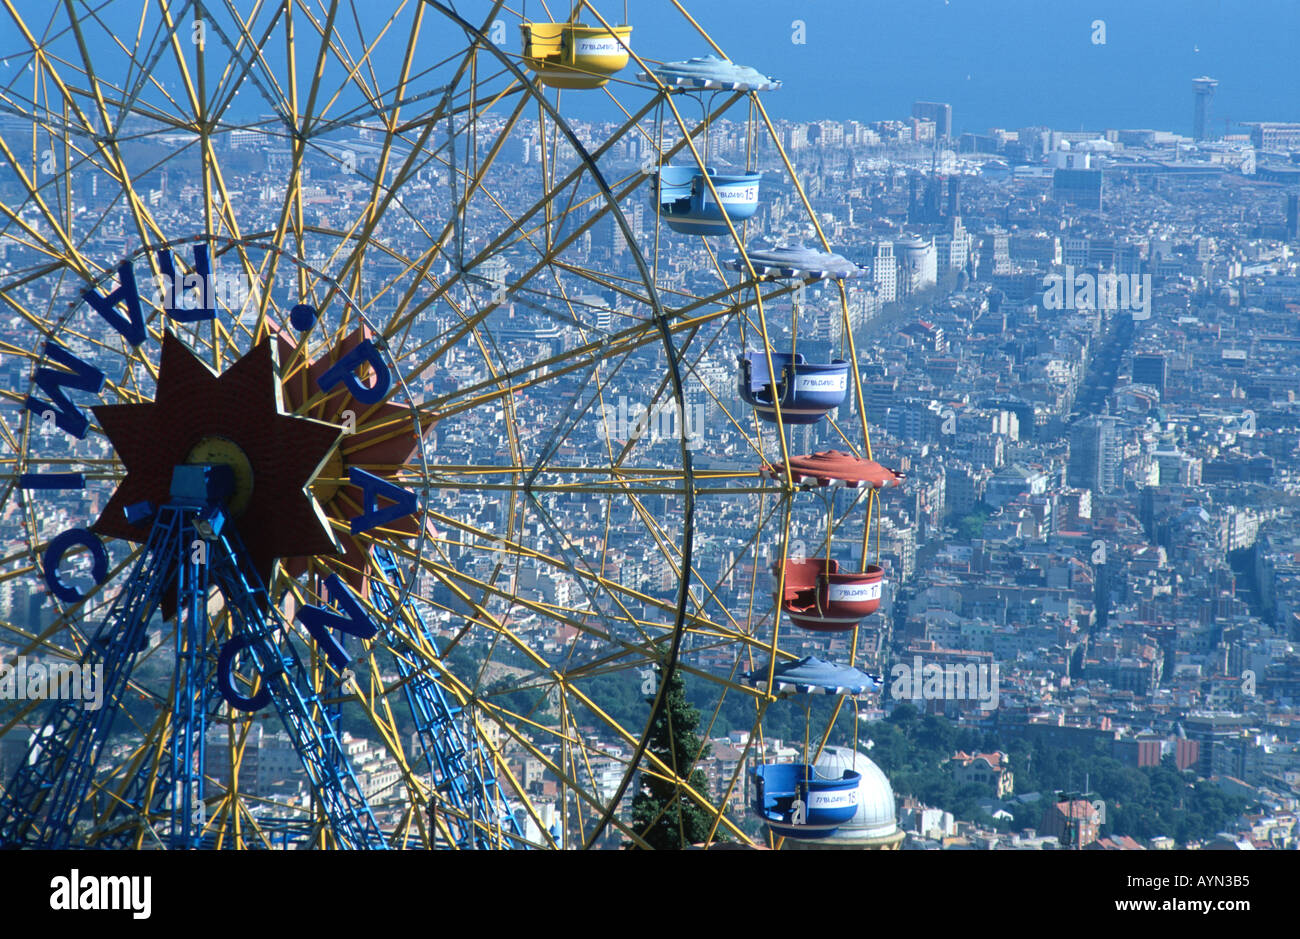 La ruota panoramica Ferris panoramico con la vista migliore al mondo nel parco di divertimenti di Tibidabo alta sopra Barcellona Spagna. Foto Stock